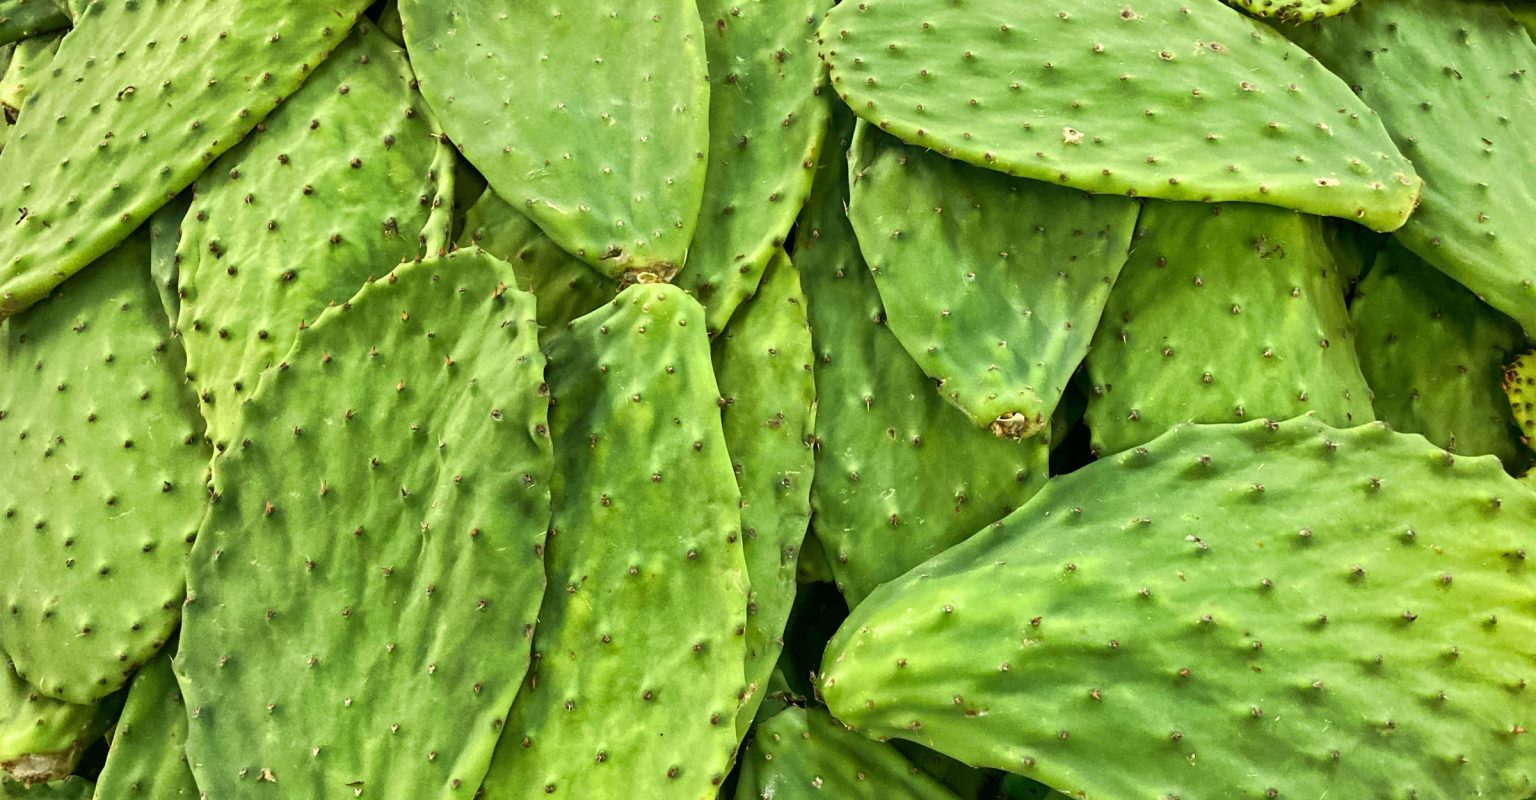 Nopal, auch als Opuntia streptacantha oder Opuntia ficus indica bekannt, ist ein Kaktus, der traditionell zur Regulierung des Blutzuckerspiegels und zur Unterstützung des Cholesterinwertes verwendet wird. Die HANDO®Nopal Kapseln enthalten das Pulver dieses wertvollen Kaktus, hergestellt aus wildwachsenden Kakteen aus unberührten Ökosystemen in Mexiko. Entzündungshemmend